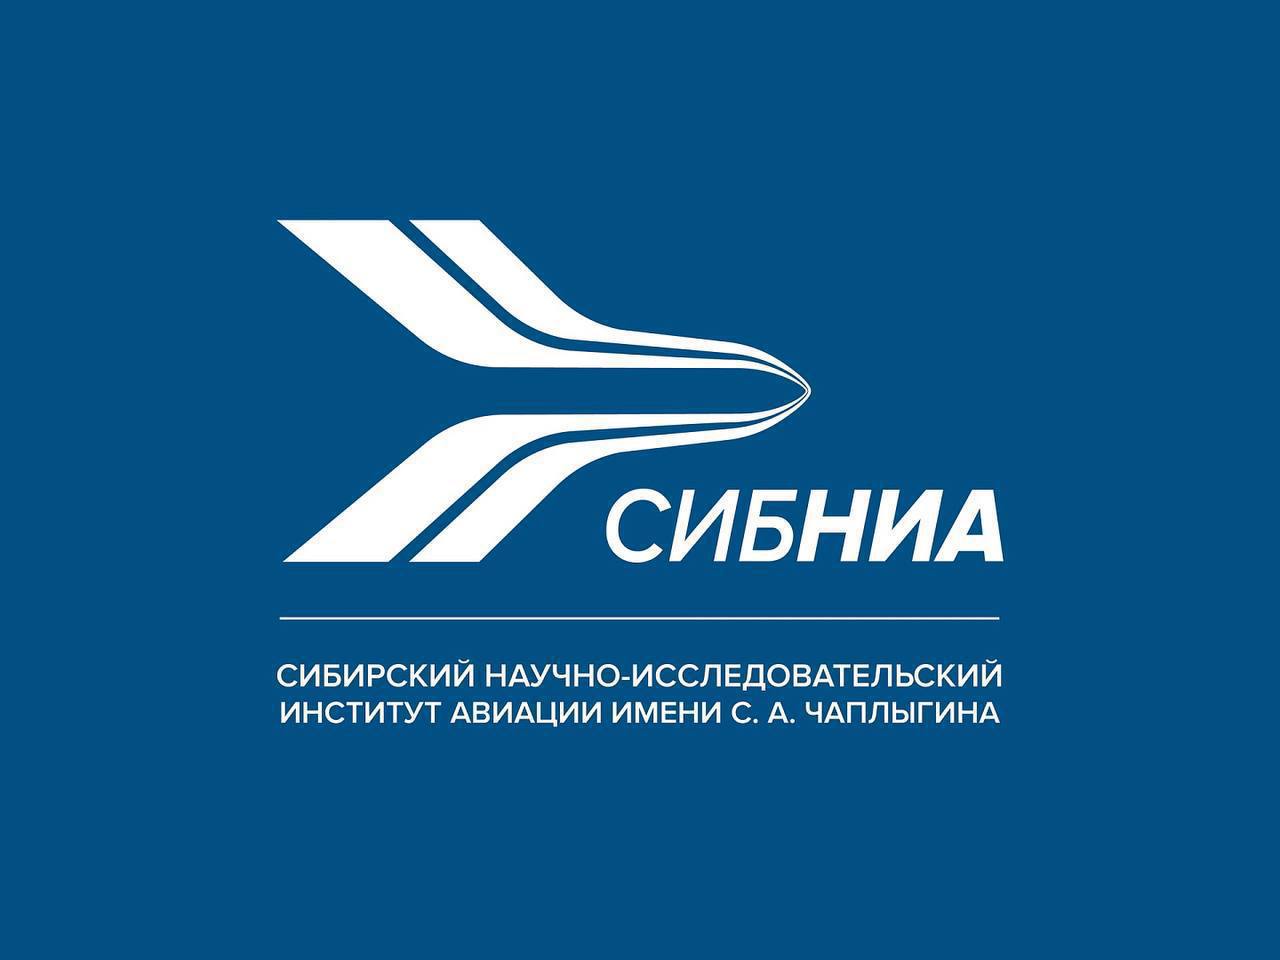 В СибНИА состоялась II Всероссийская научно-практическая конференция «Проблемы прочности авиационных конструкций и материалов»